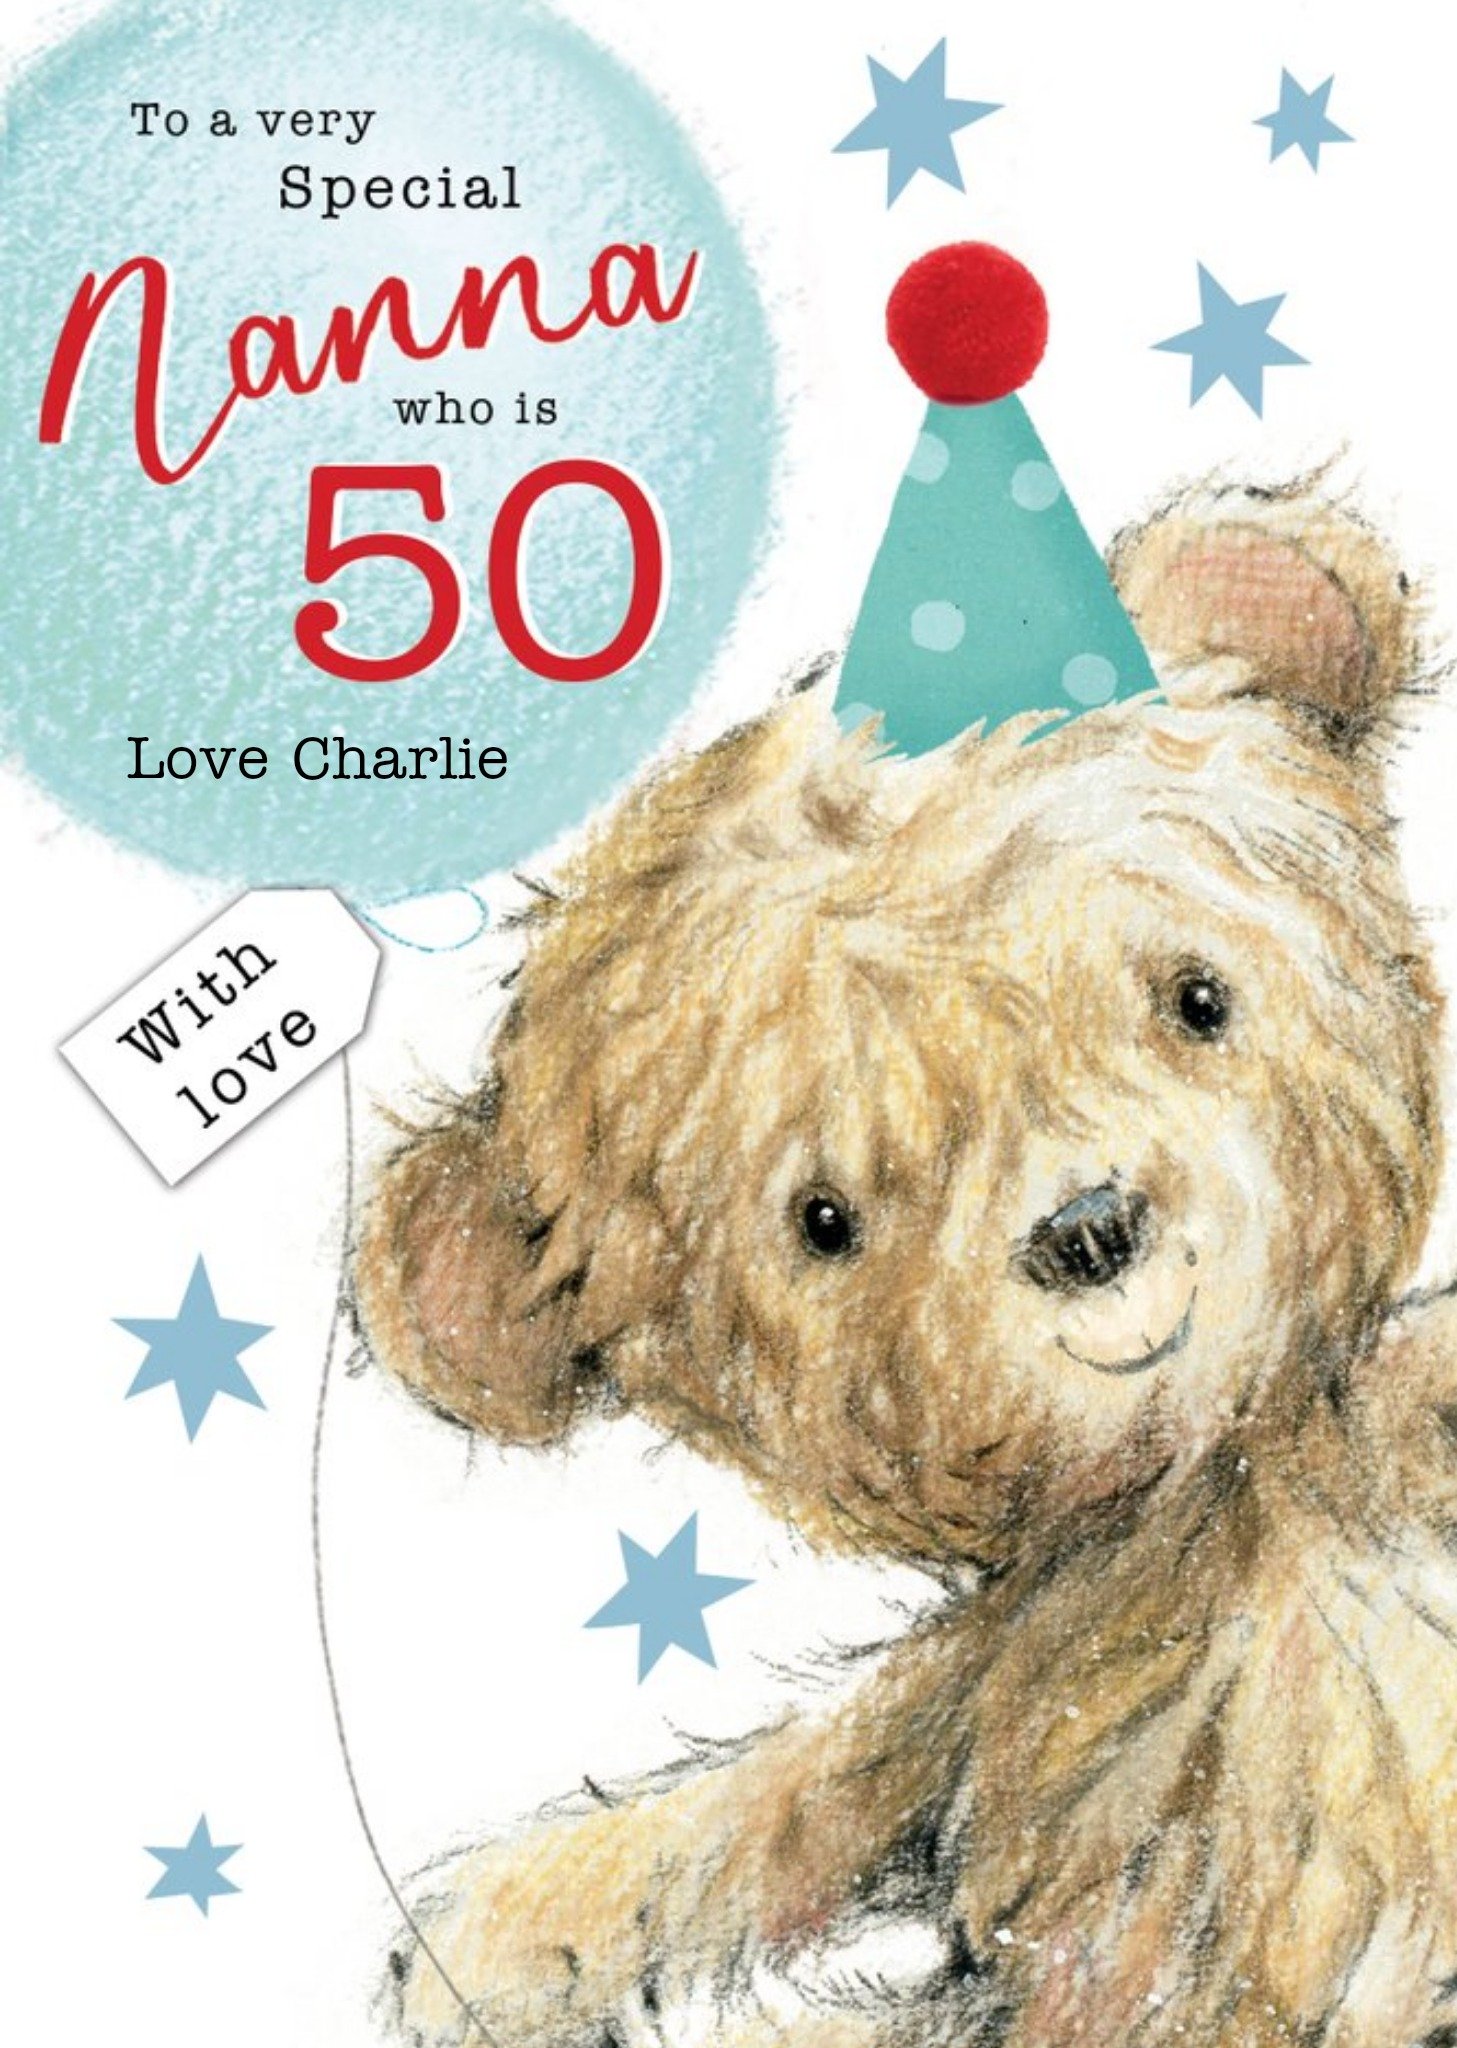 Moonpig Clintons Nanna Illustrated Teddy Bear 50th Birthday Card Ecard